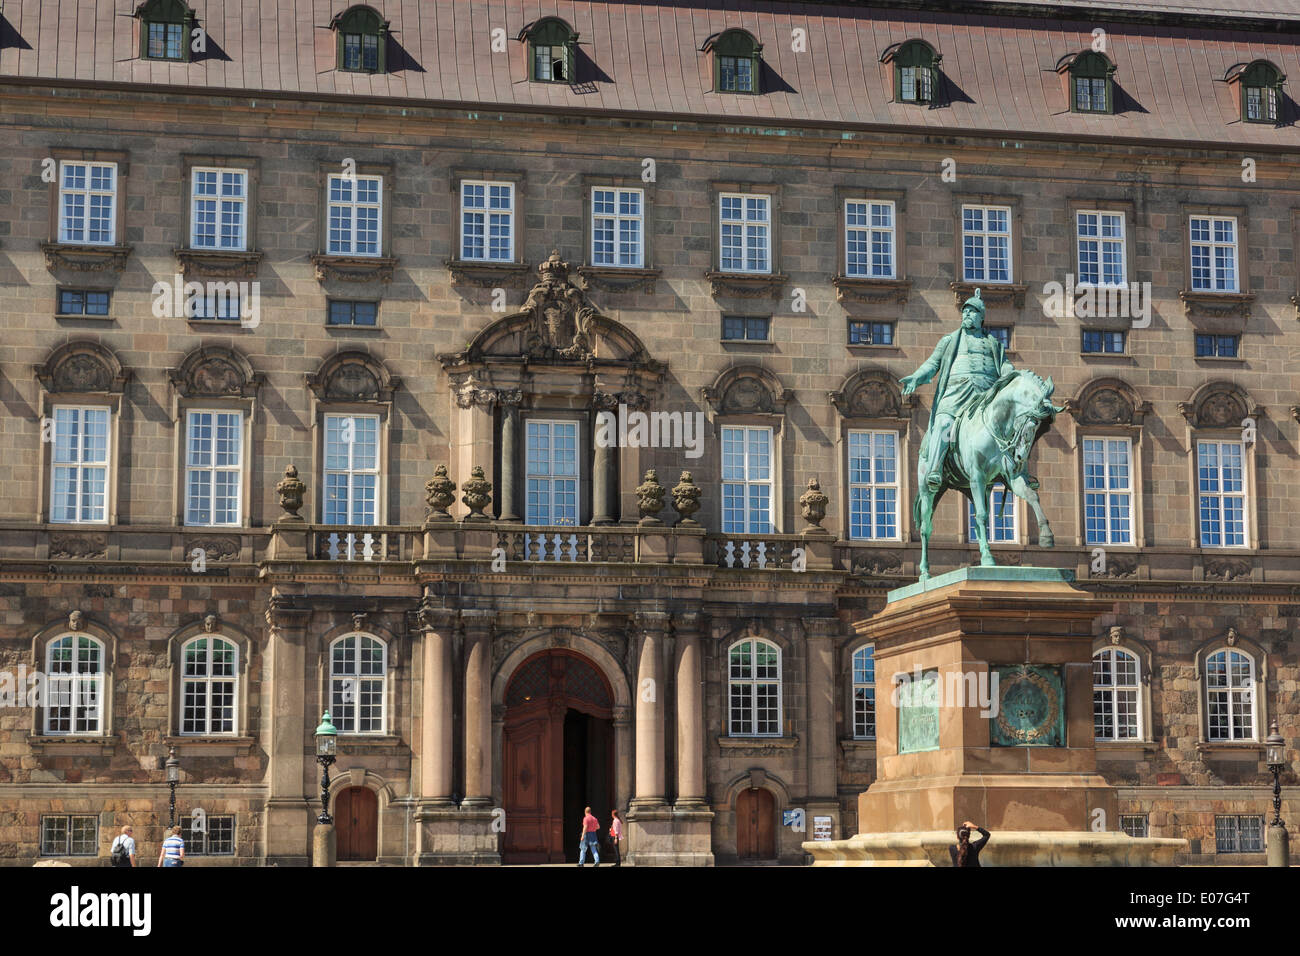 Statue équestre du roi Frédéric VII en dehors de Christianborg Palace sur Slotsholmen / Château Isle à Copenhague Danemark Nouvelle-Zélande Banque D'Images